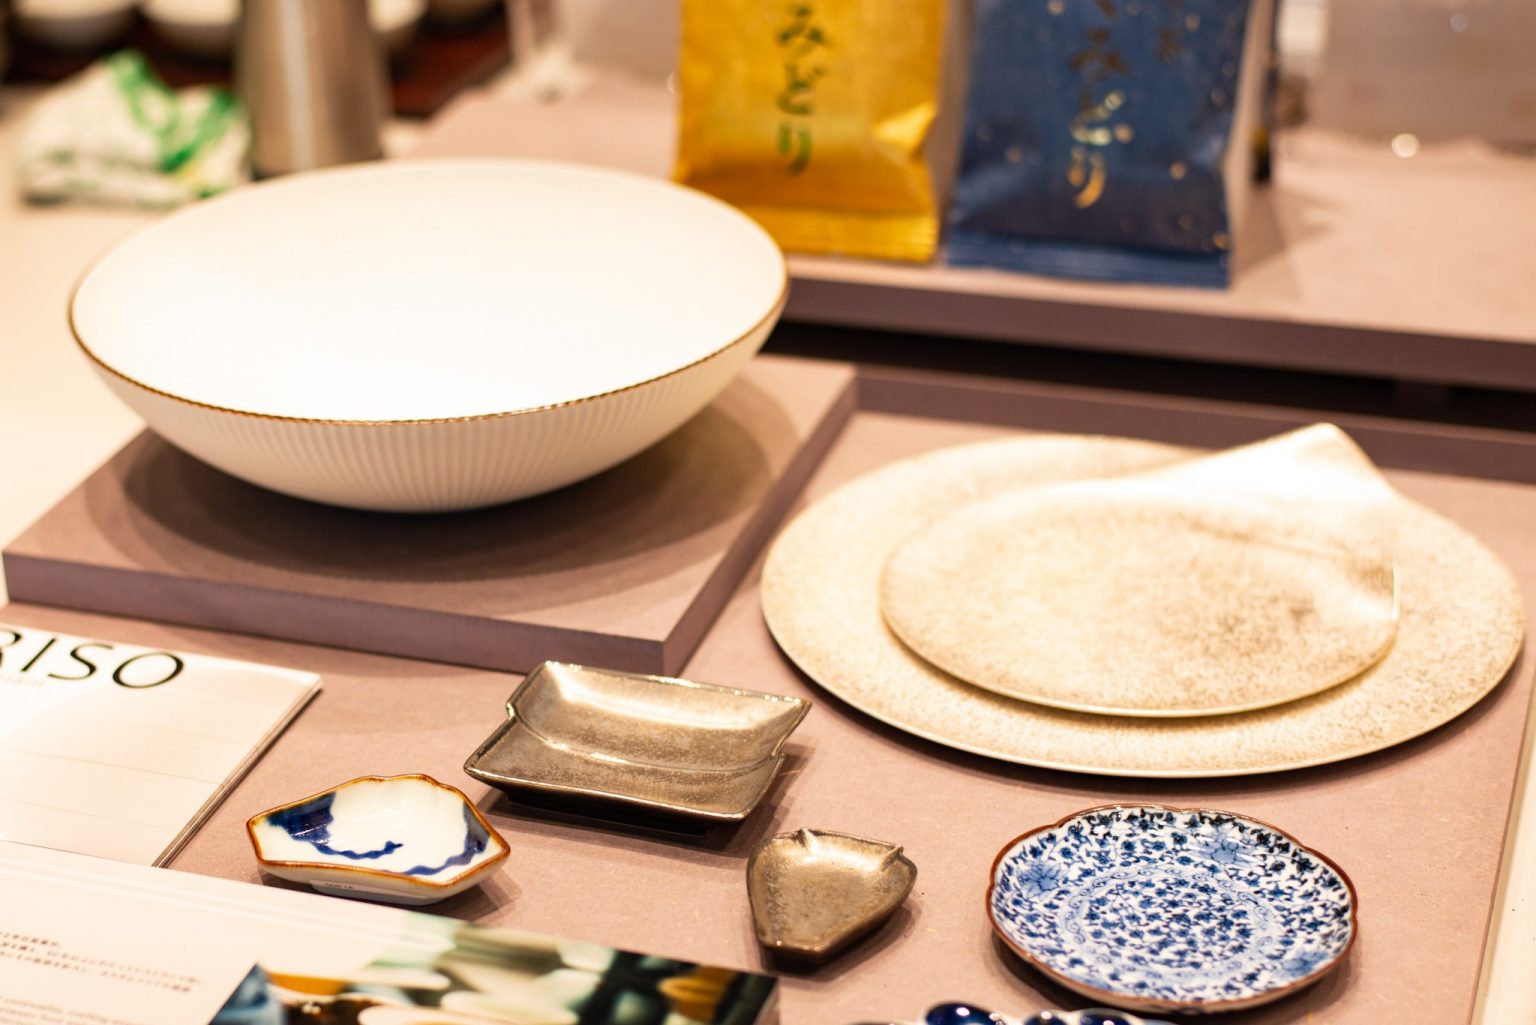 佐賀の伝統的工芸品「有田焼」。60年以上にわたり、レストランで用いる陶磁器を手がけてきた〈李荘窯業所〉による作品です。控えめながら、セットされているだけでサマになる心にくい食器。